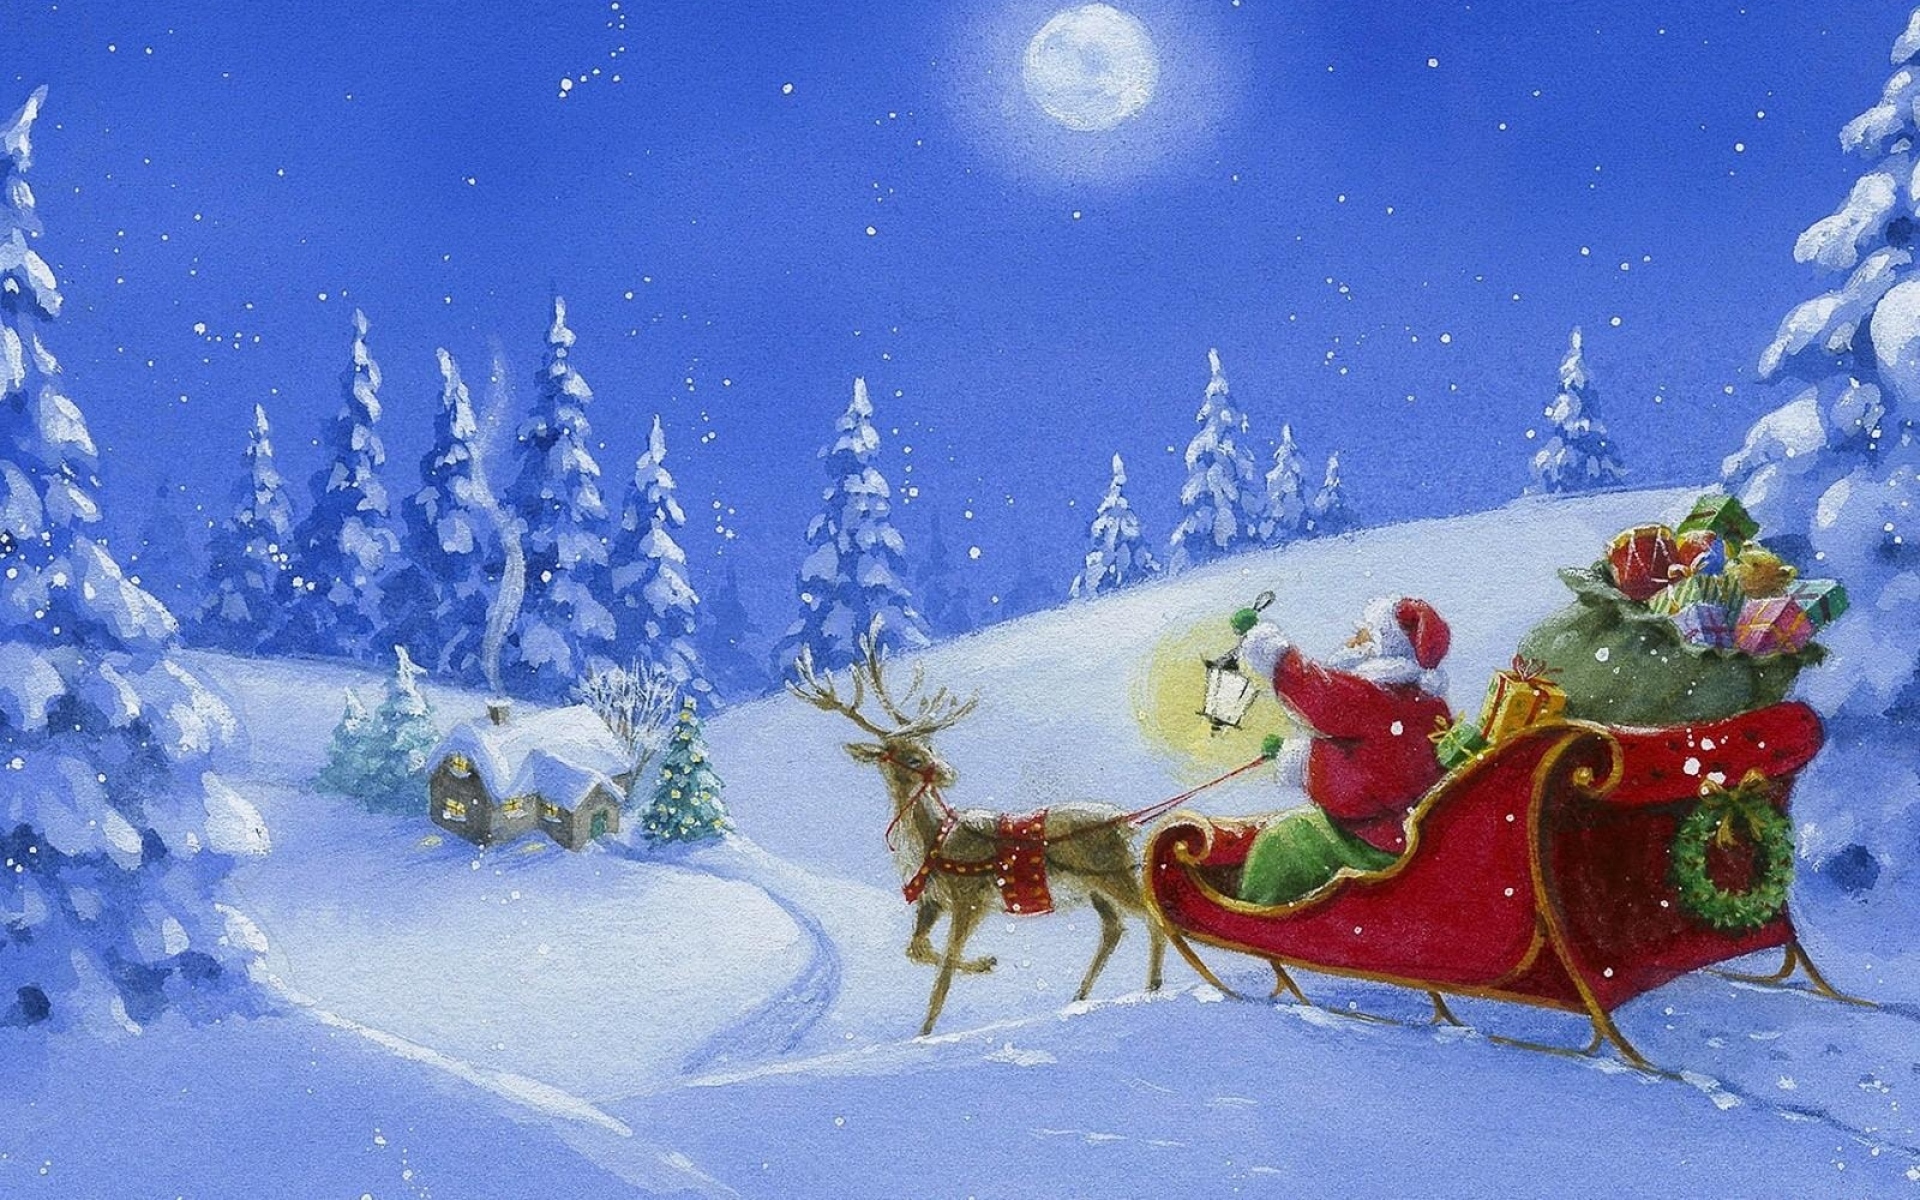 Картинки Санта-Клаус, северный олень, сани, подарки, дерево, свет, дом, ночь, луна фото и обои на рабочий стол